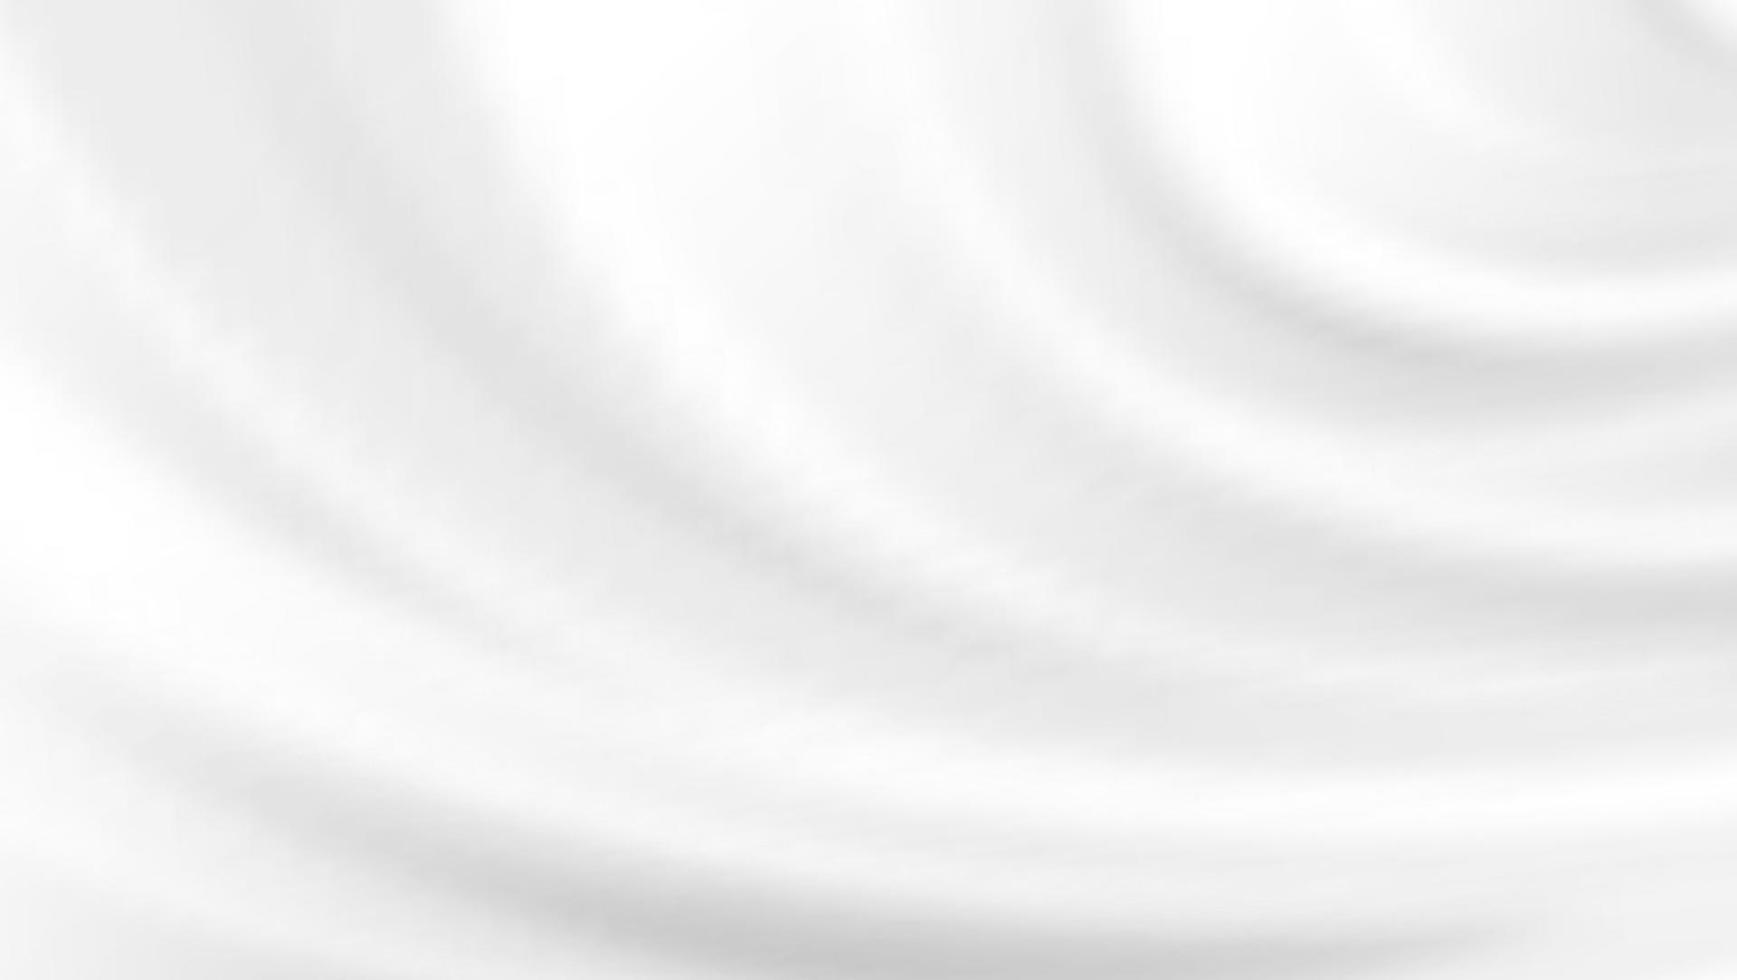 sfondo bianco astratto panno di lusso o onda liquida o pieghe ondulate di texture di seta grunge satin velluto materiale elegante carta da parati design, sfondo. illustrazione vettoriale